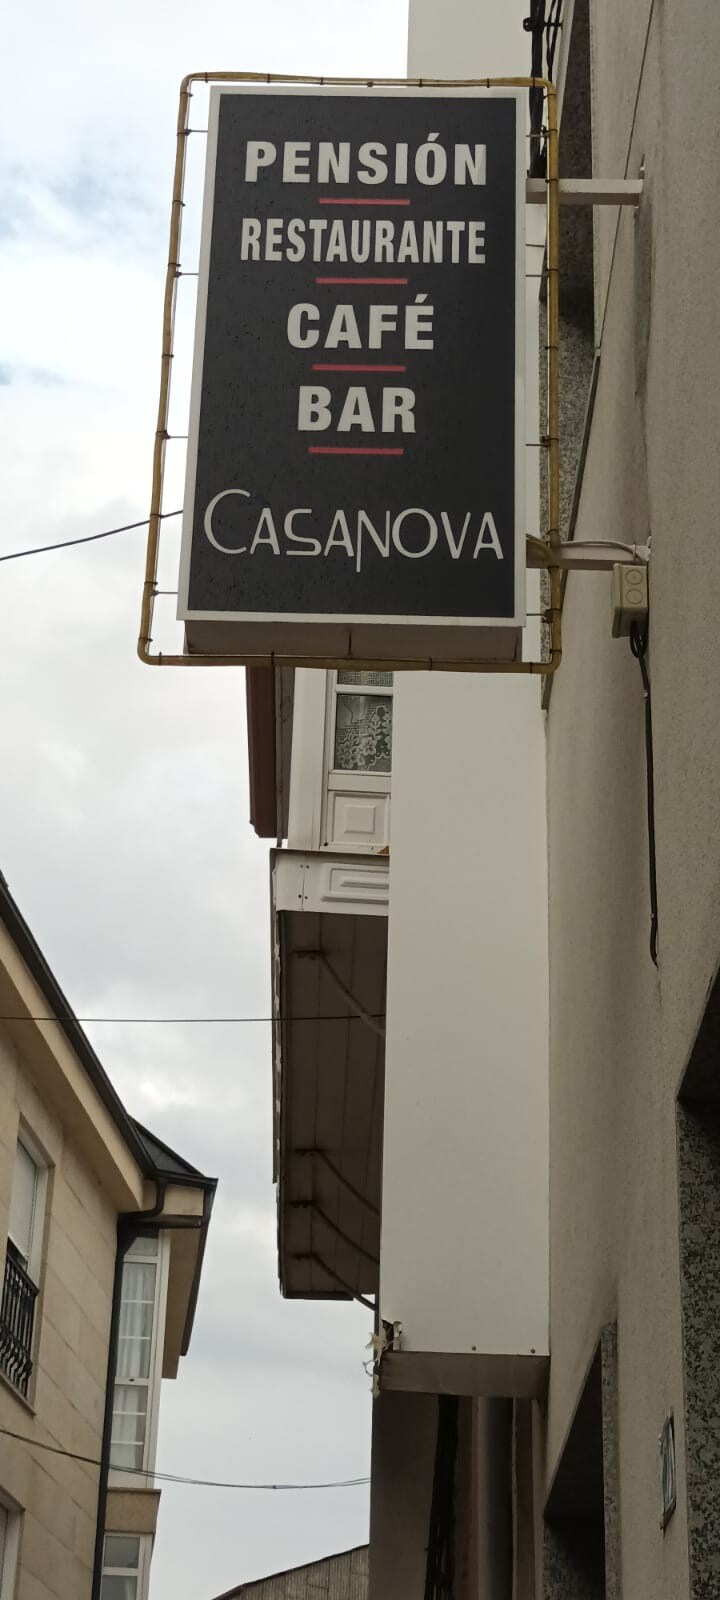 casanova, pensión restaurante